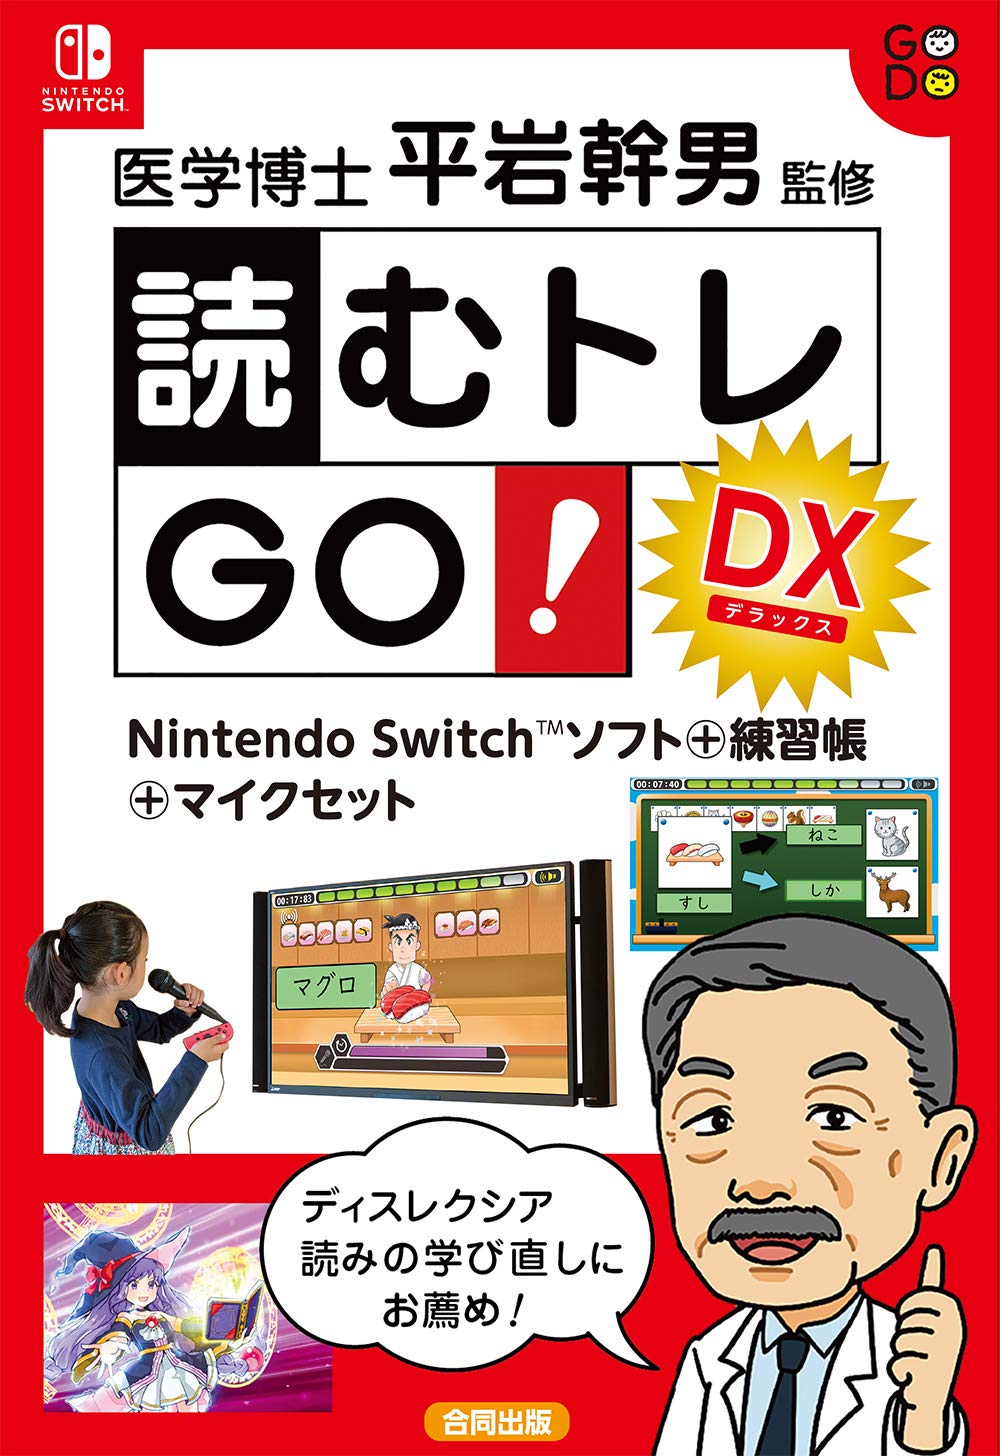 読むトレGO!DX: Nintendo Switchソフト+練習帳+マイクセット ([実用品])